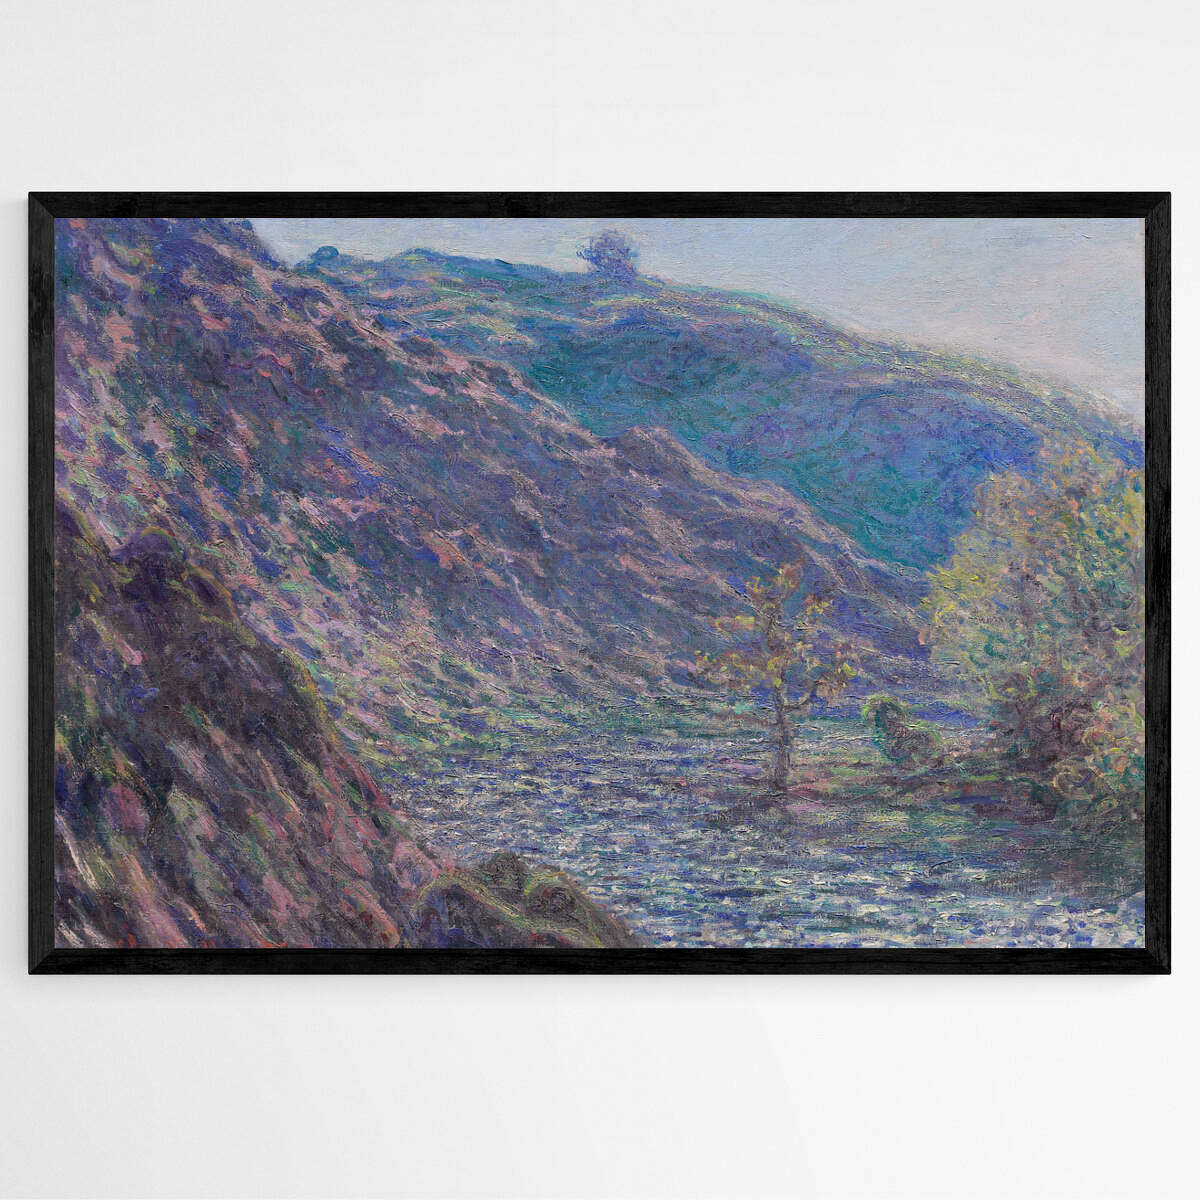 The Petite Creuse River by Claude Monet | Claude Monet Wall Art Prints - The Canvas Hive